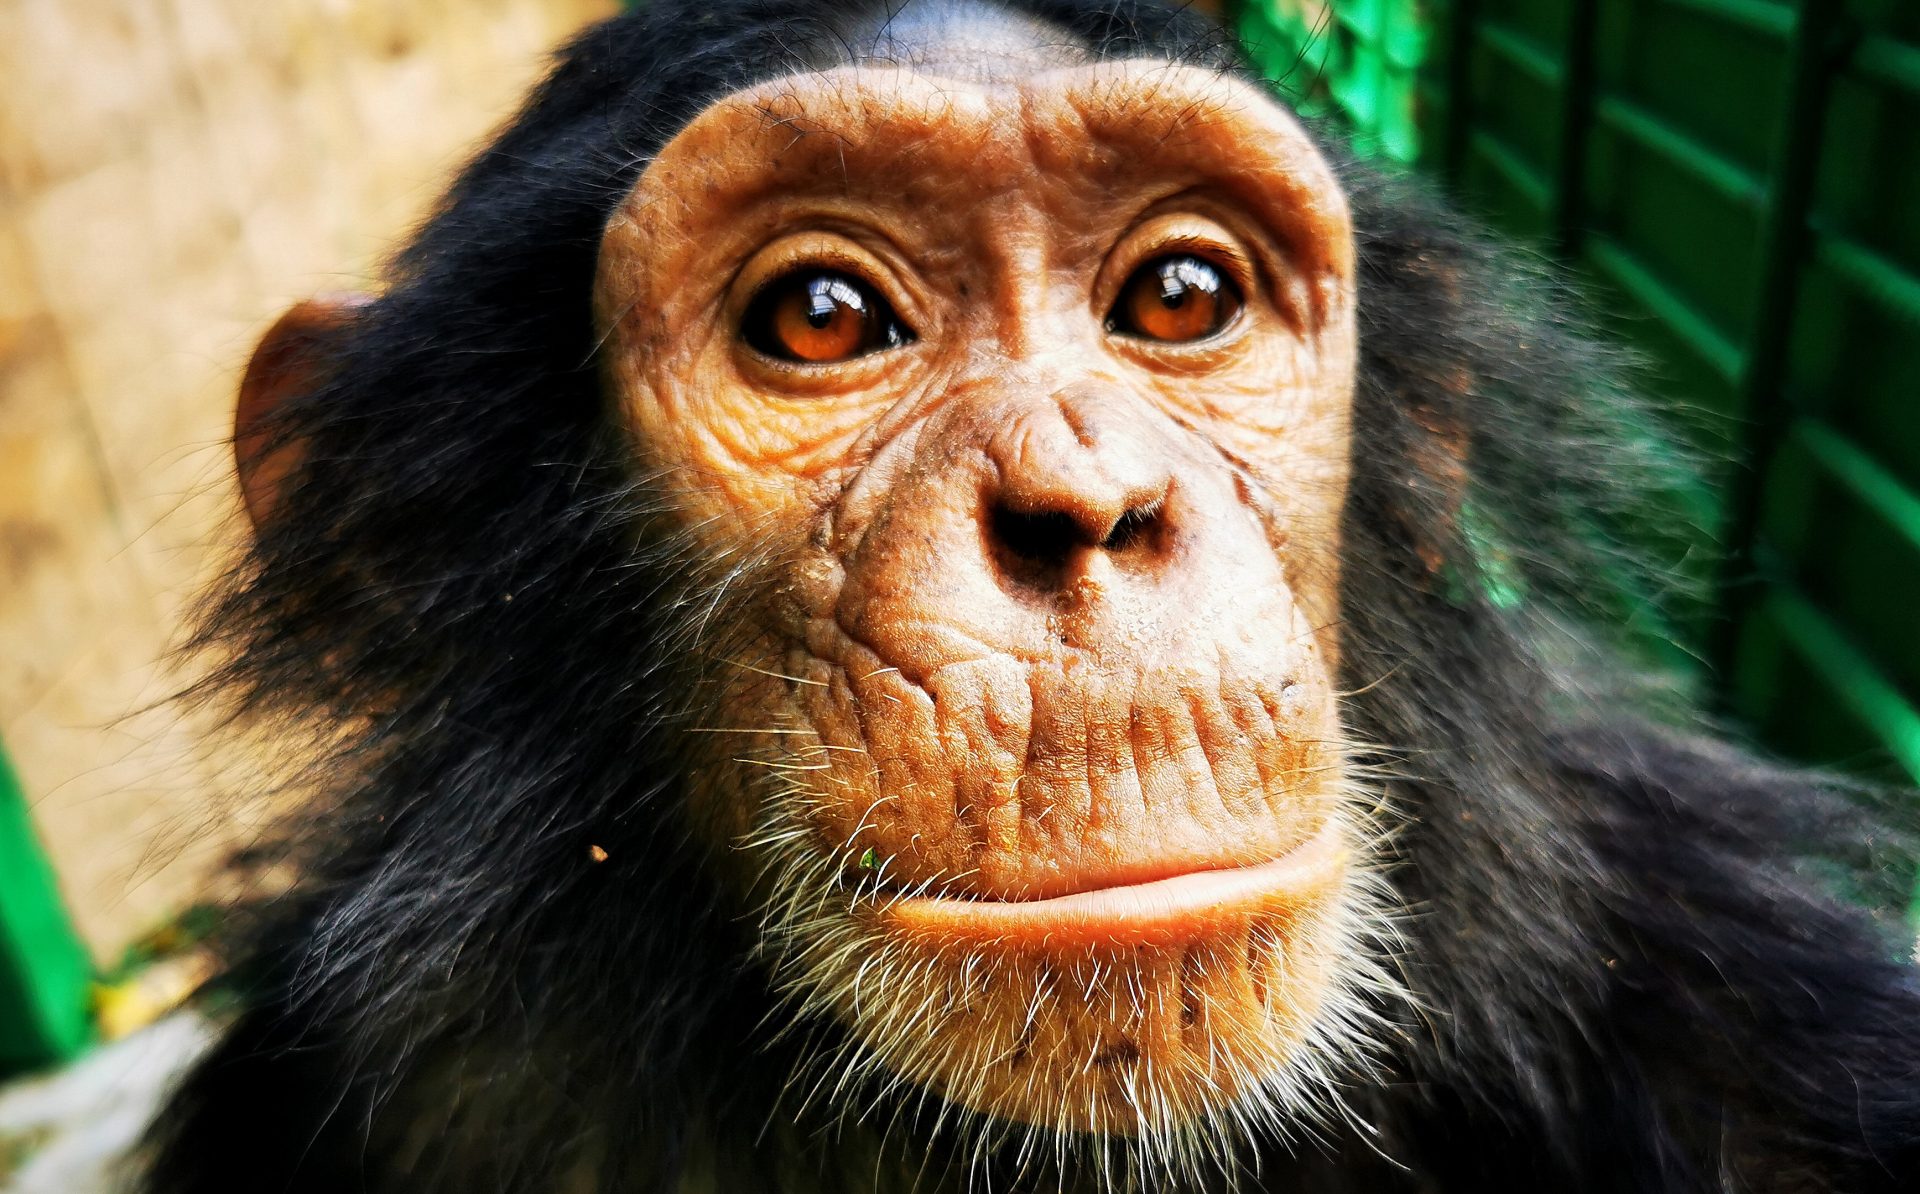 JACK, a sanctuary for chimpanzees